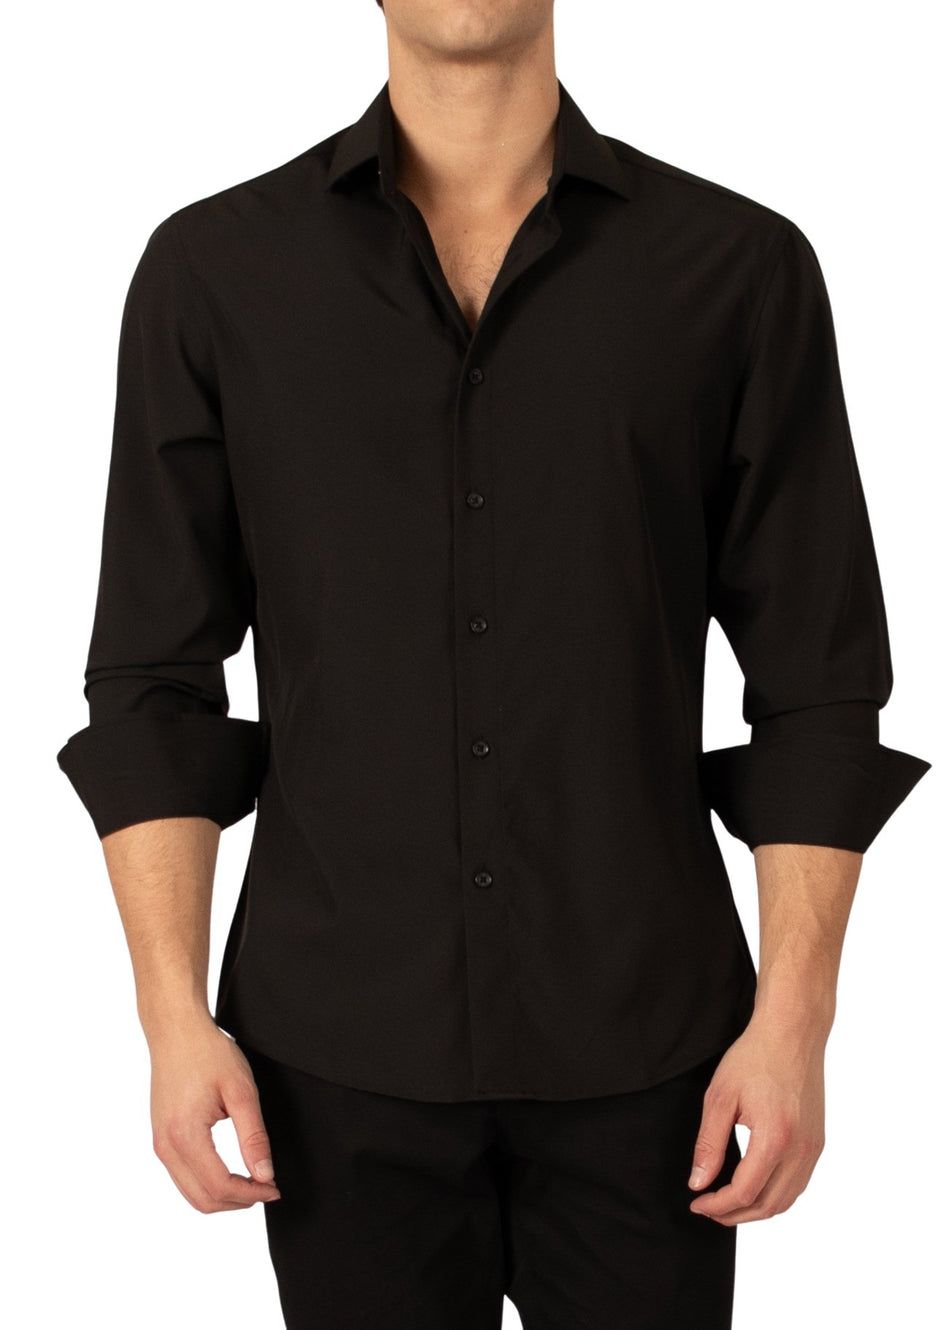 232276 - Black Button Up Long Sleeve Dress Shirt